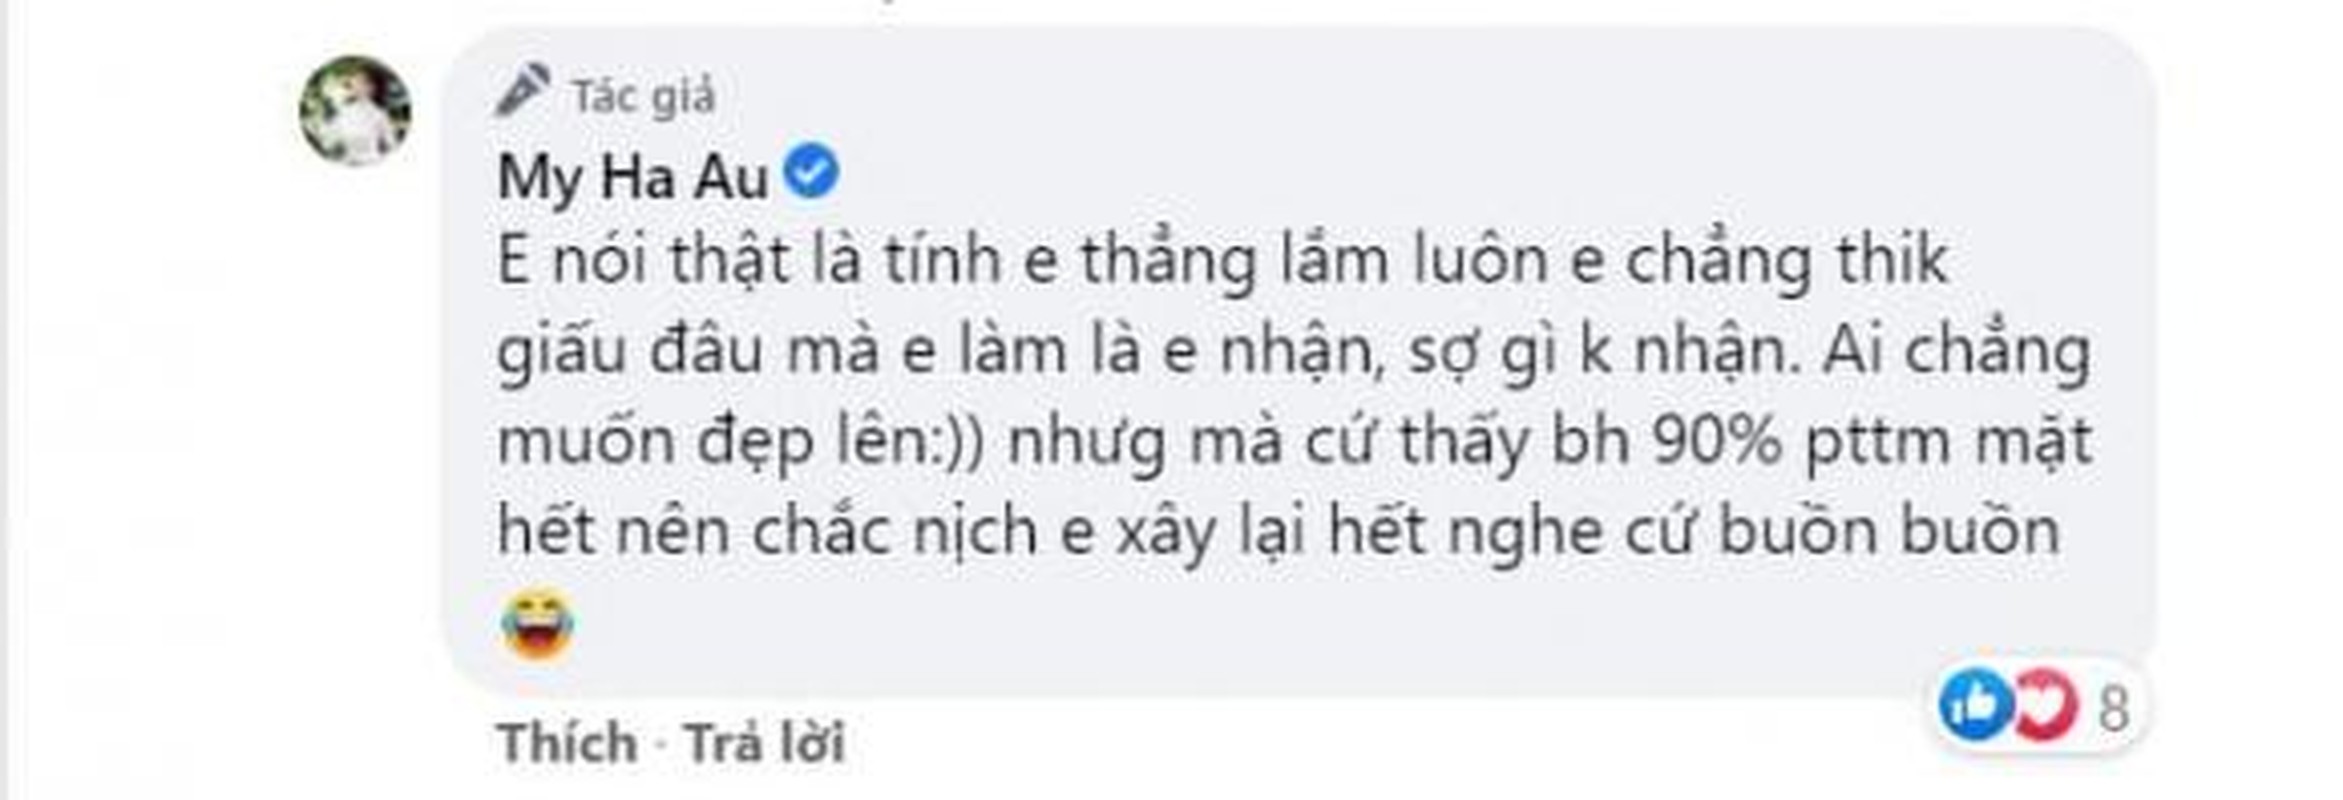 Bi don “can thiep dao keo”, nu giang vien Au Ha My noi gi?-Hinh-7